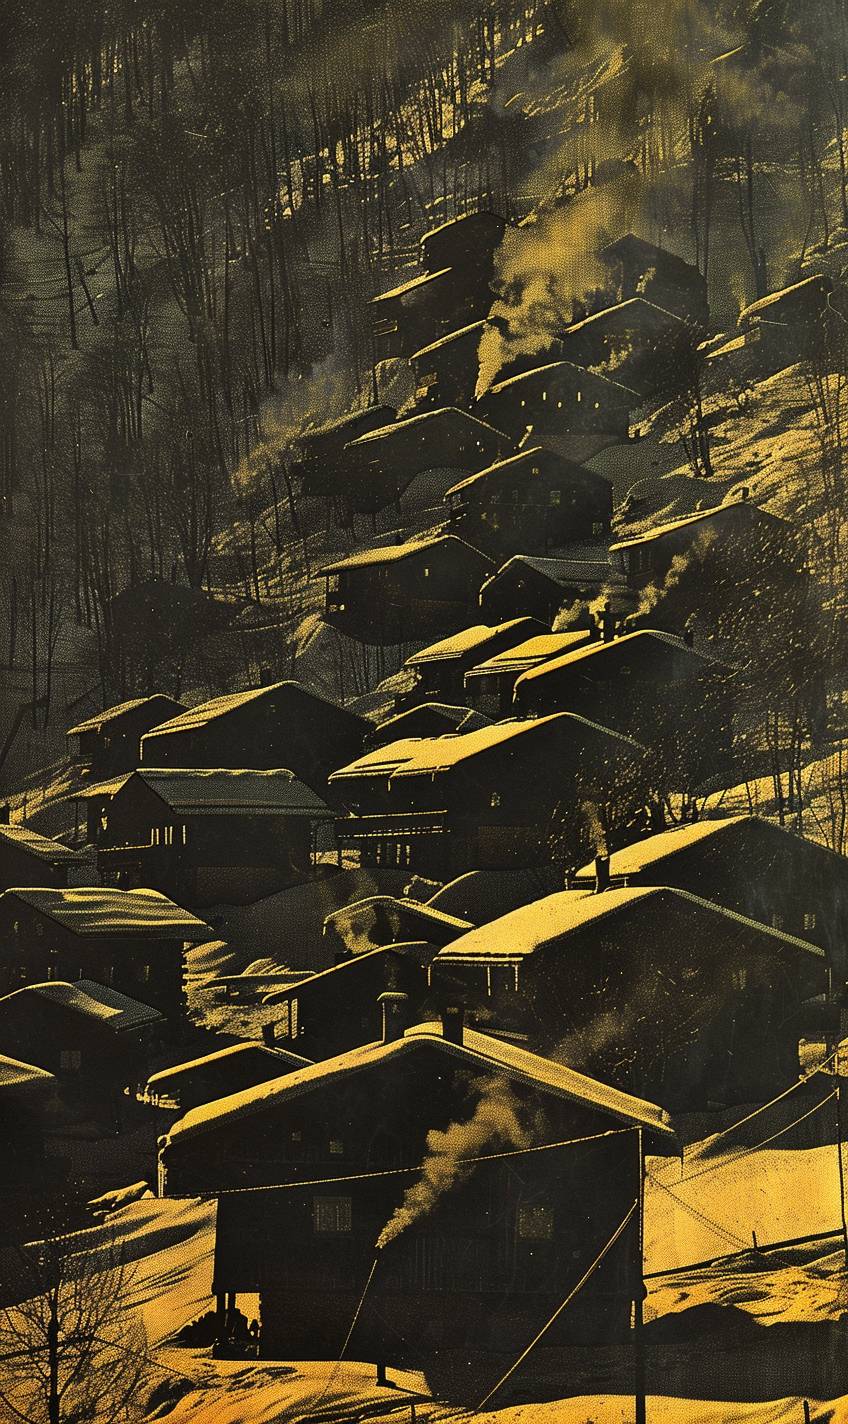 冬の時期、白い雪に覆われた山村、居心地の良い木造家屋、煙突から煙が立ち昇り、柔らかな薄明かりが魔法の輝きを放っている